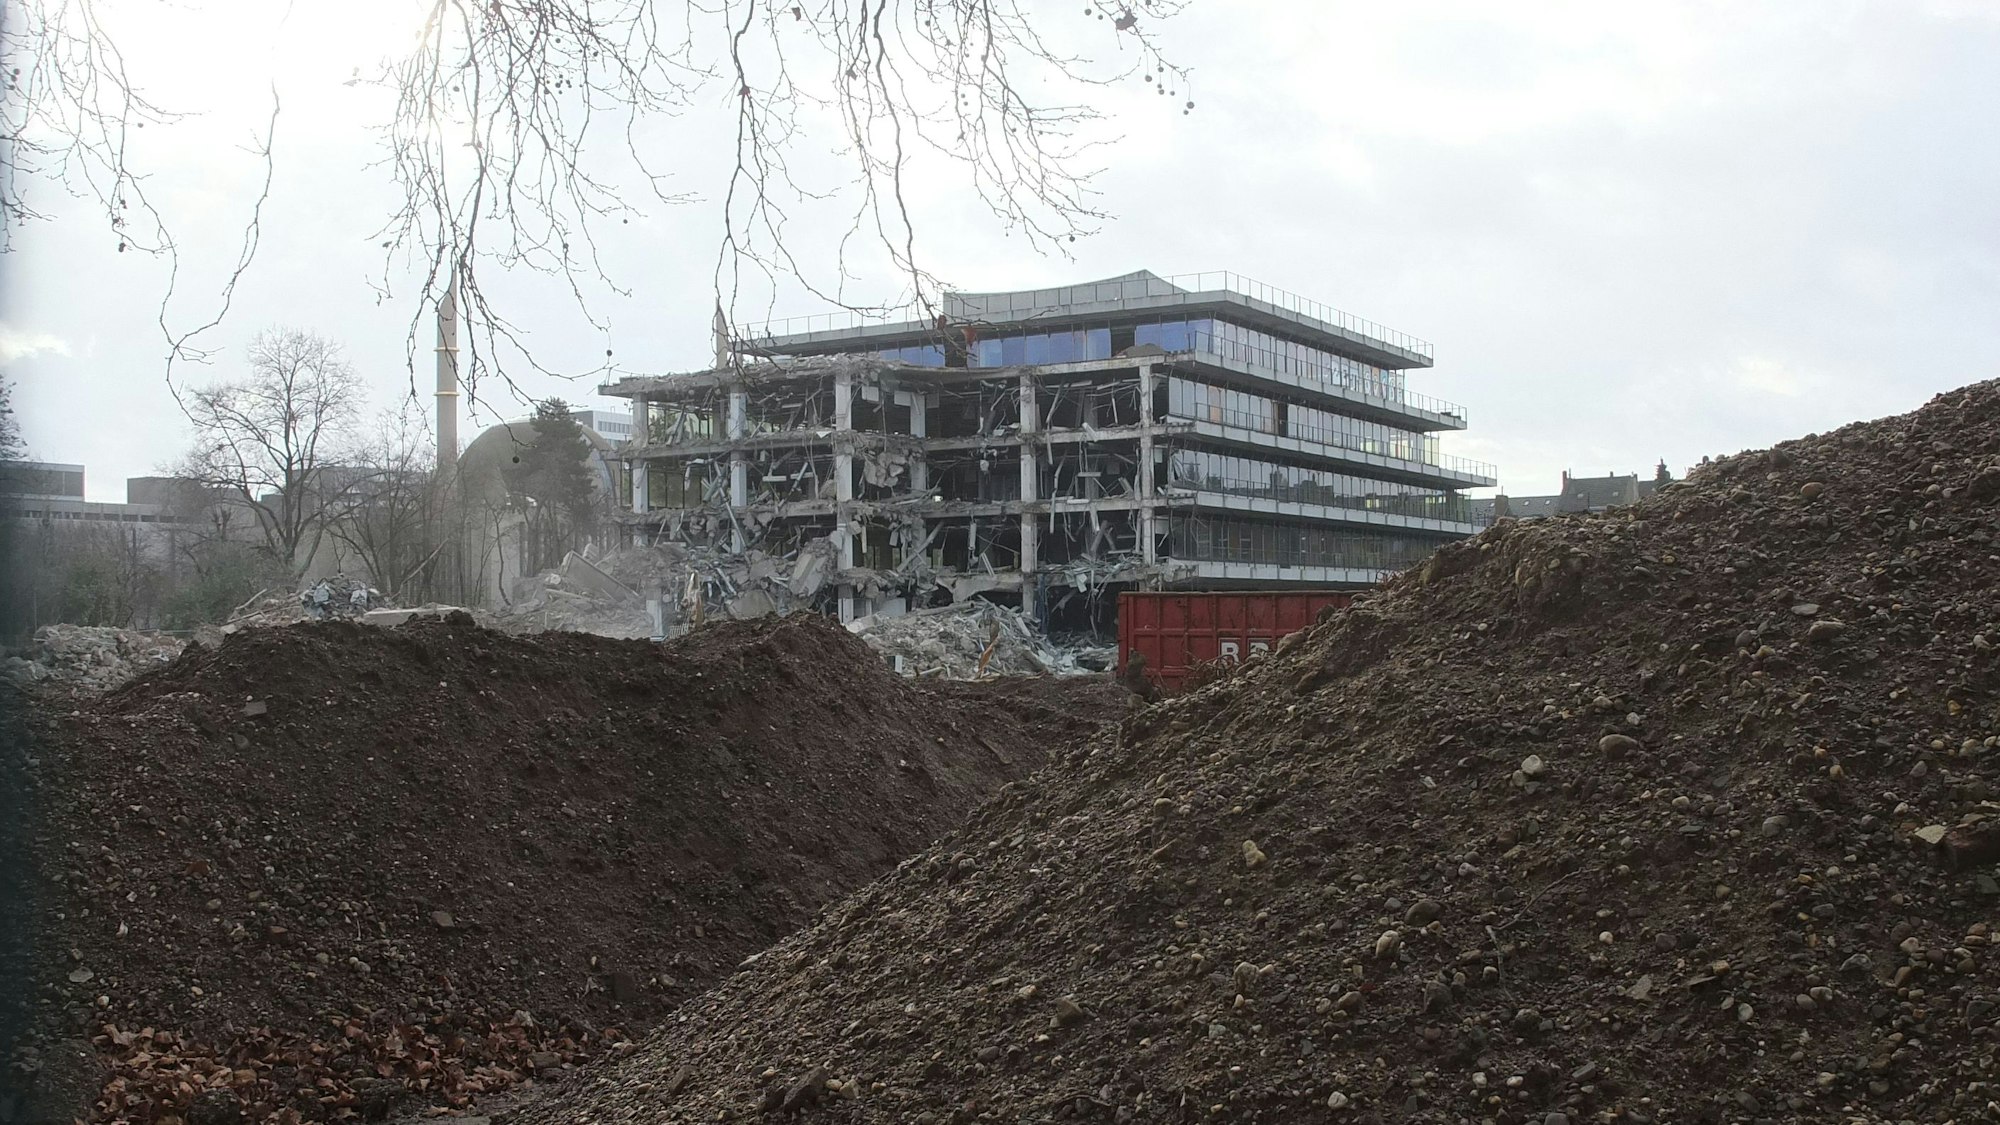 Die Abbrucharbeiten am Siemensgebäude liefern Bilder einer bizarren Endzeit-Szenerie. Hinter Erdhägeln steht das halb abgerissene Gebäude.